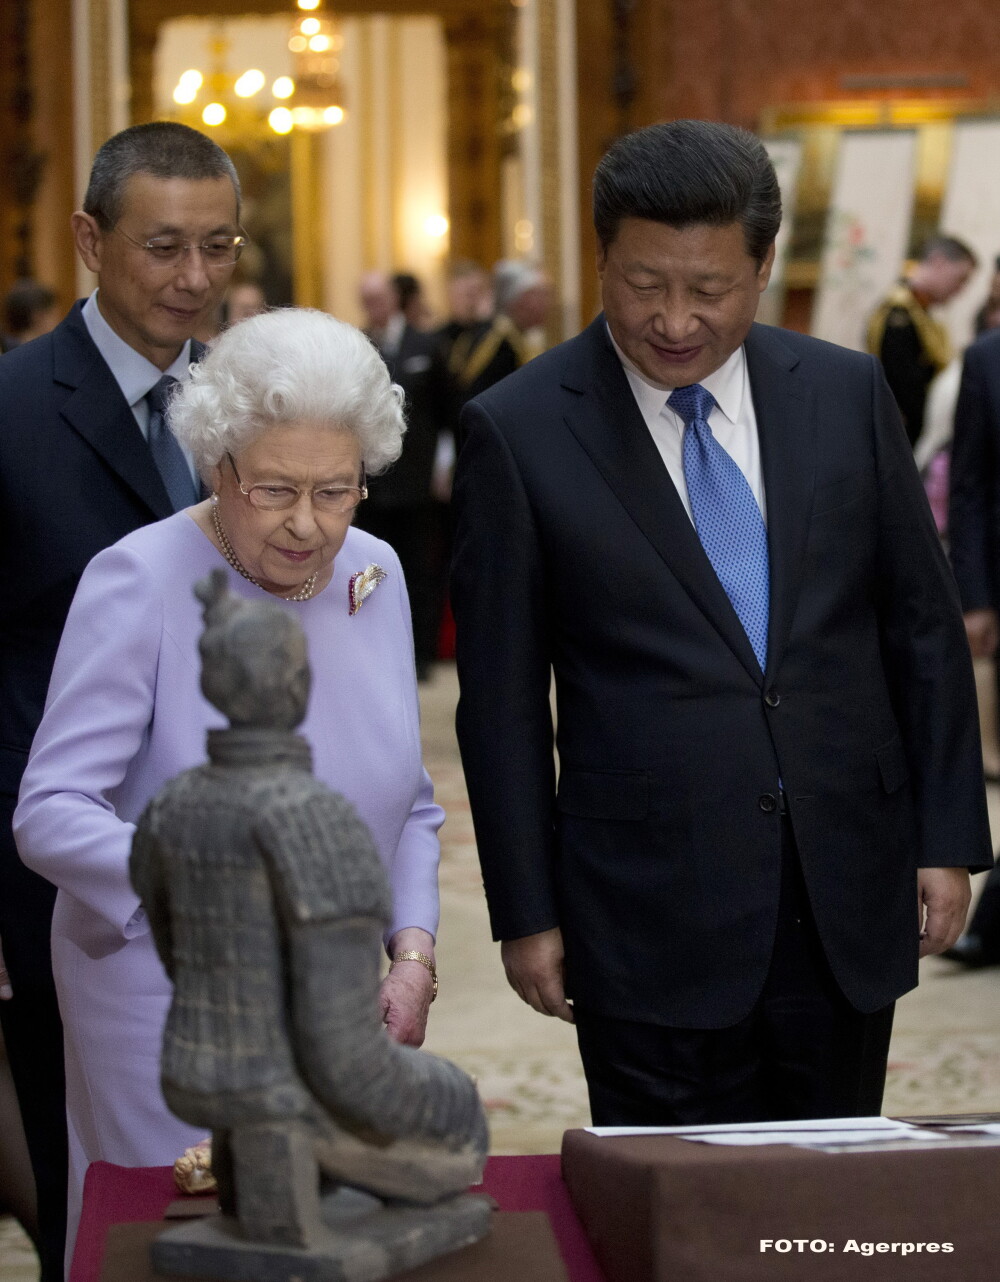 Vizita presedintelui Chinei in Marea Britanie, intr-o GALERIE FOTO cu cele mai bune imagini. De ce este foarte importanta - Imaginea 6